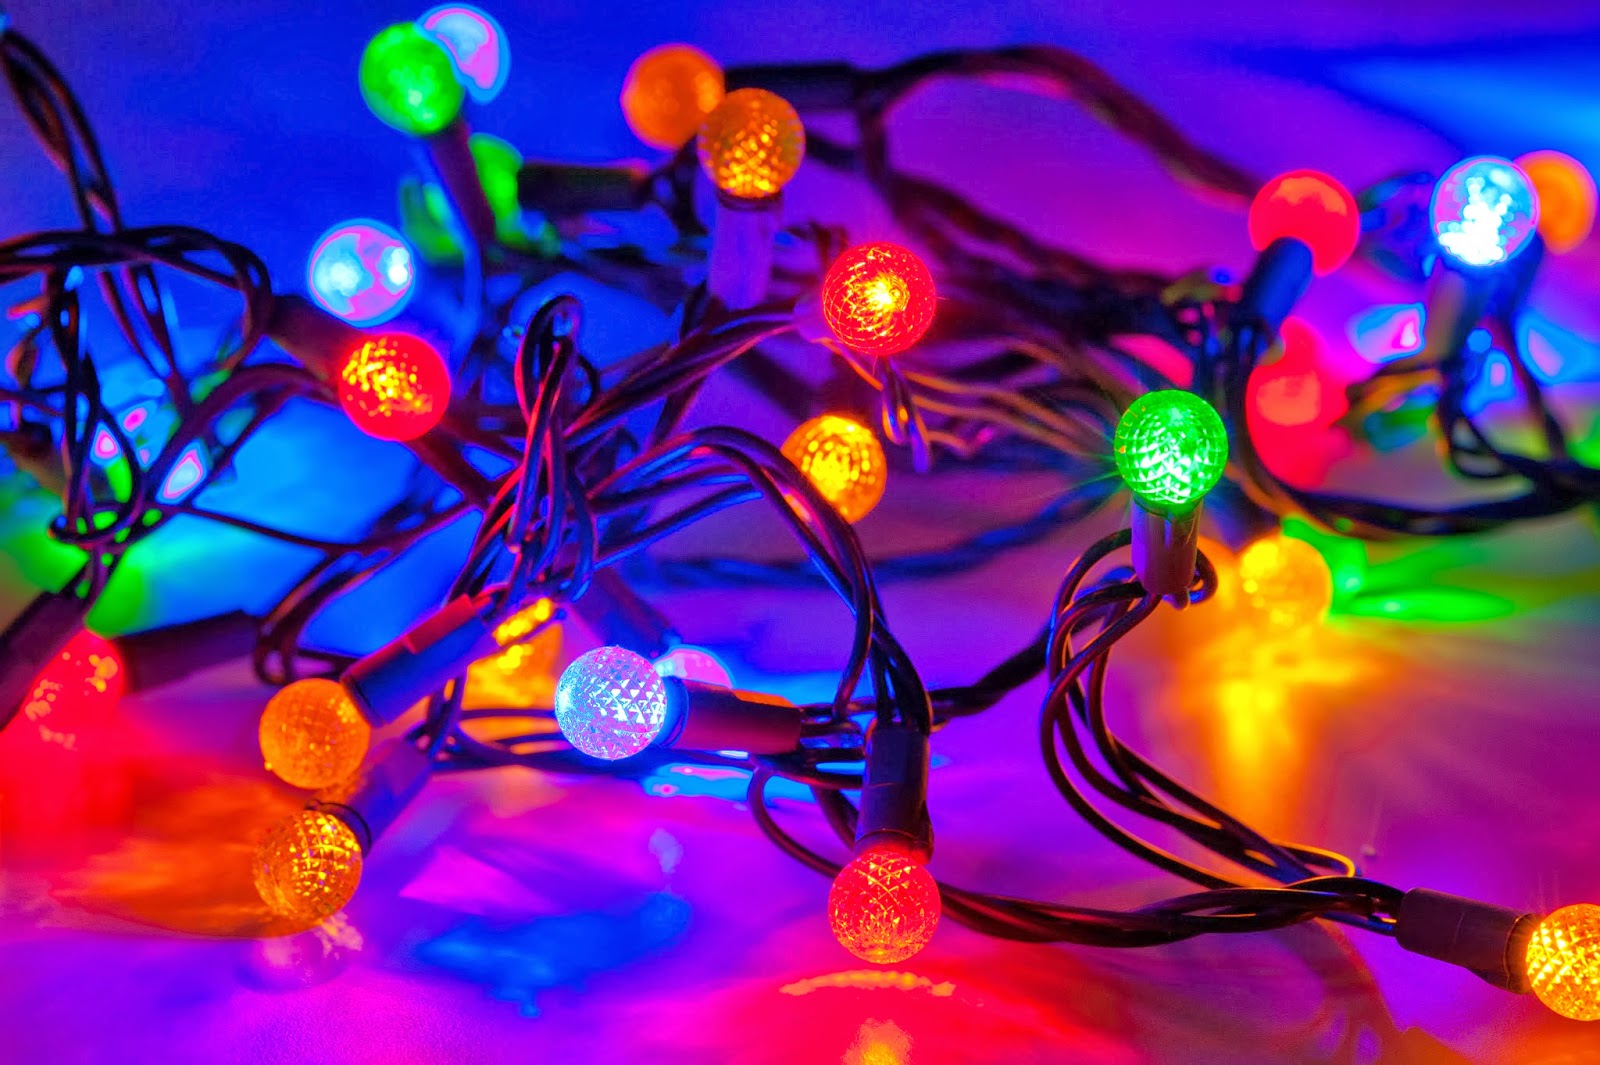 christmas lights - christmas lights wallpaper - christmas lights on houses - christmas lights clipart - christmas lights border - christmas lights tumblr - christmas lights background